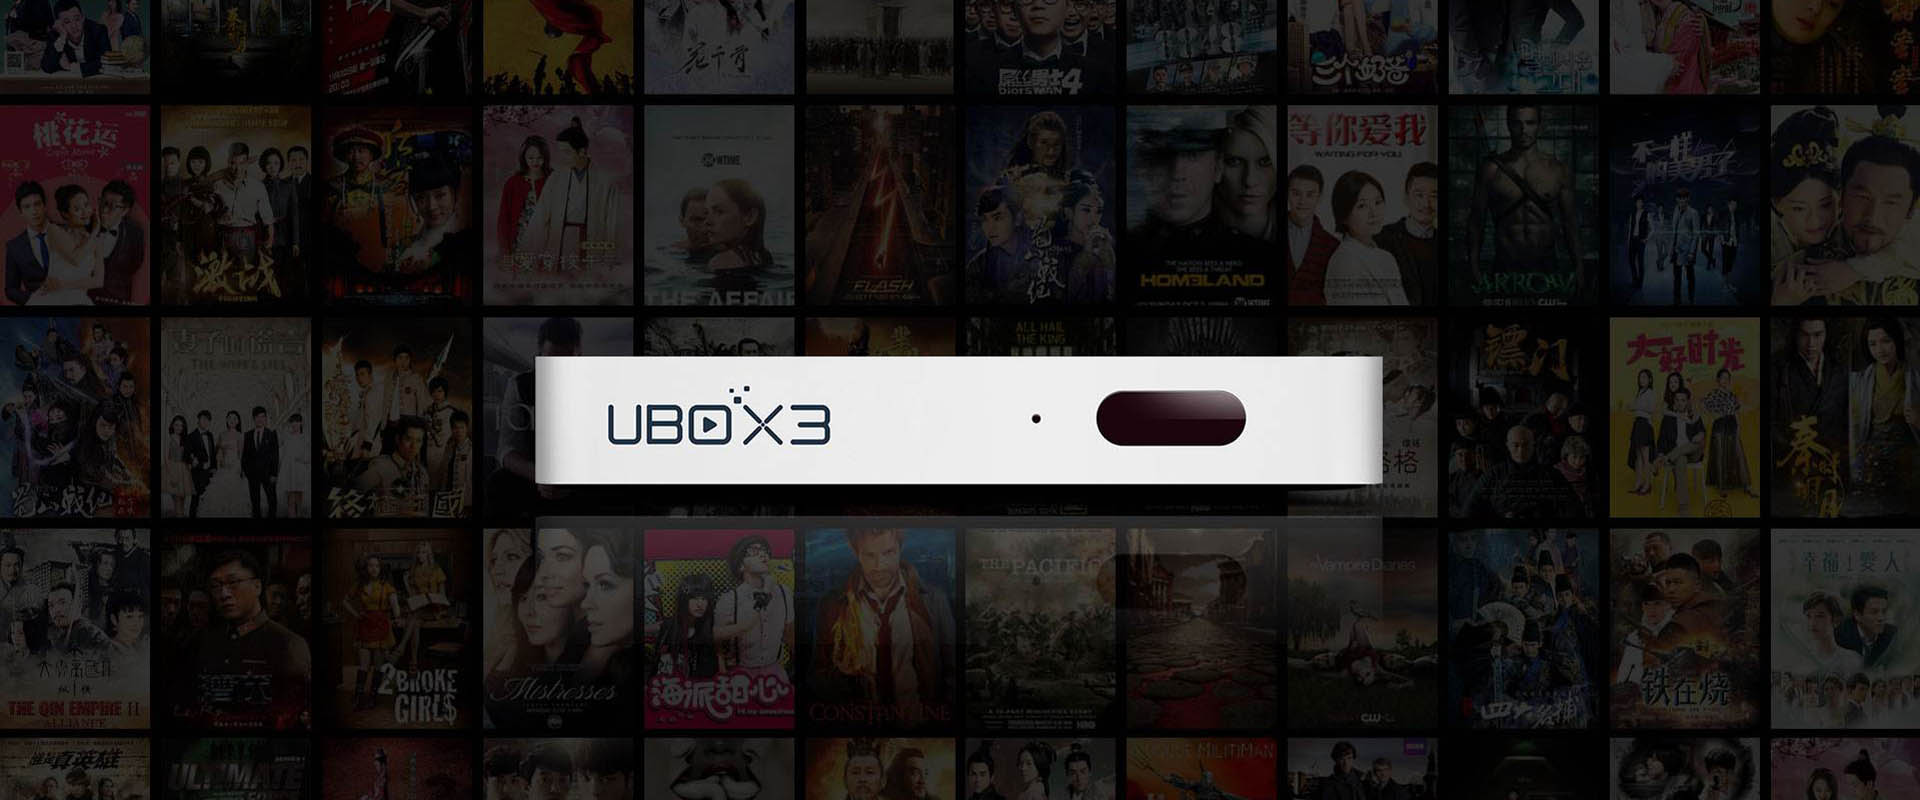 TV Box UBOX 3 - Xem các chương trình truyền hình miễn phí từ Đại lục Trung Quốc